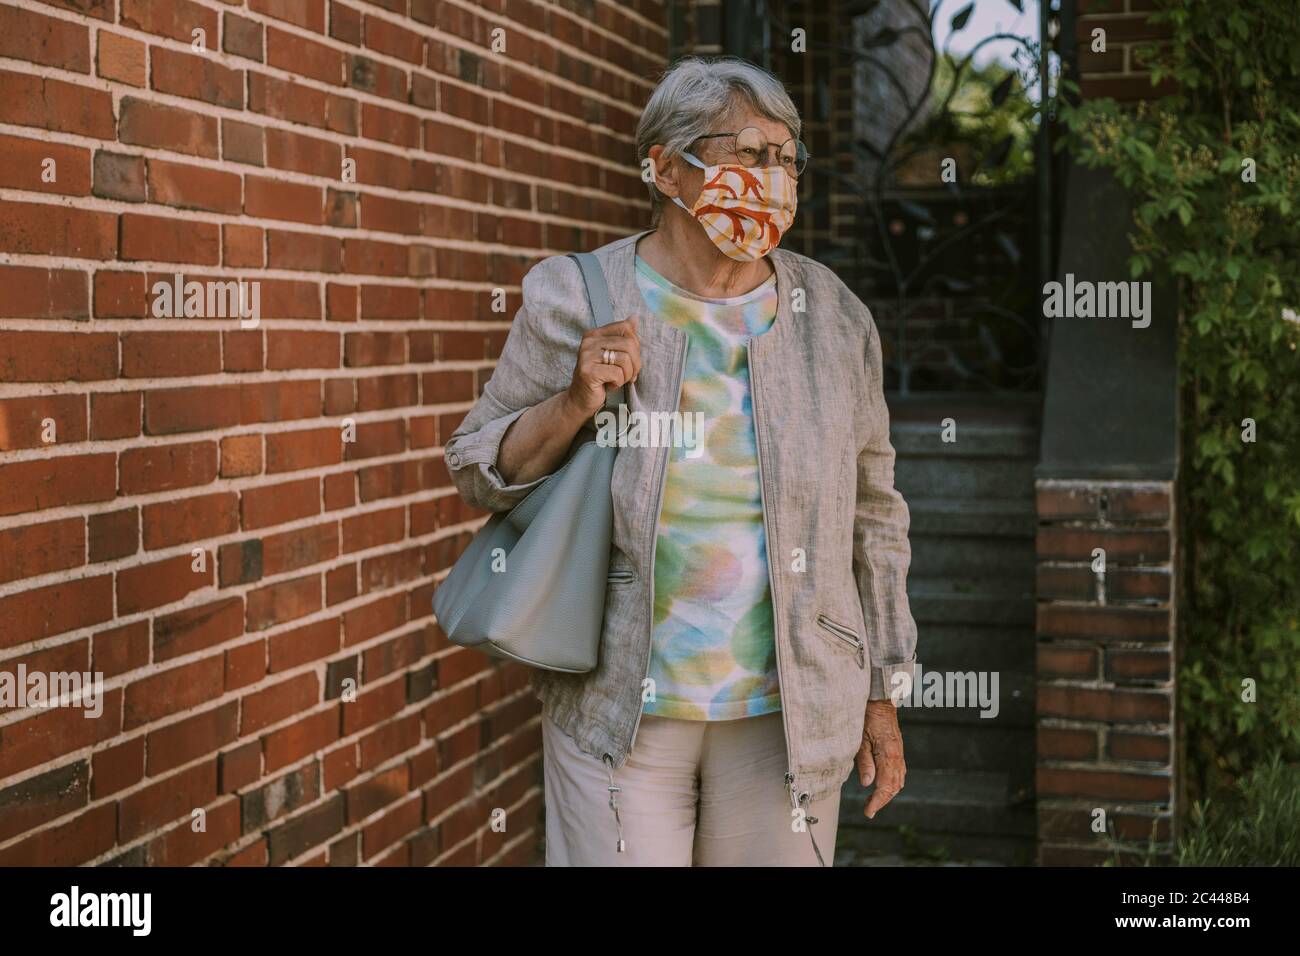 Mujer mayor jubilada usando máscara facial mientras caminaba por la pared de ladrillo durante la epidemia de coronavirus Foto de stock